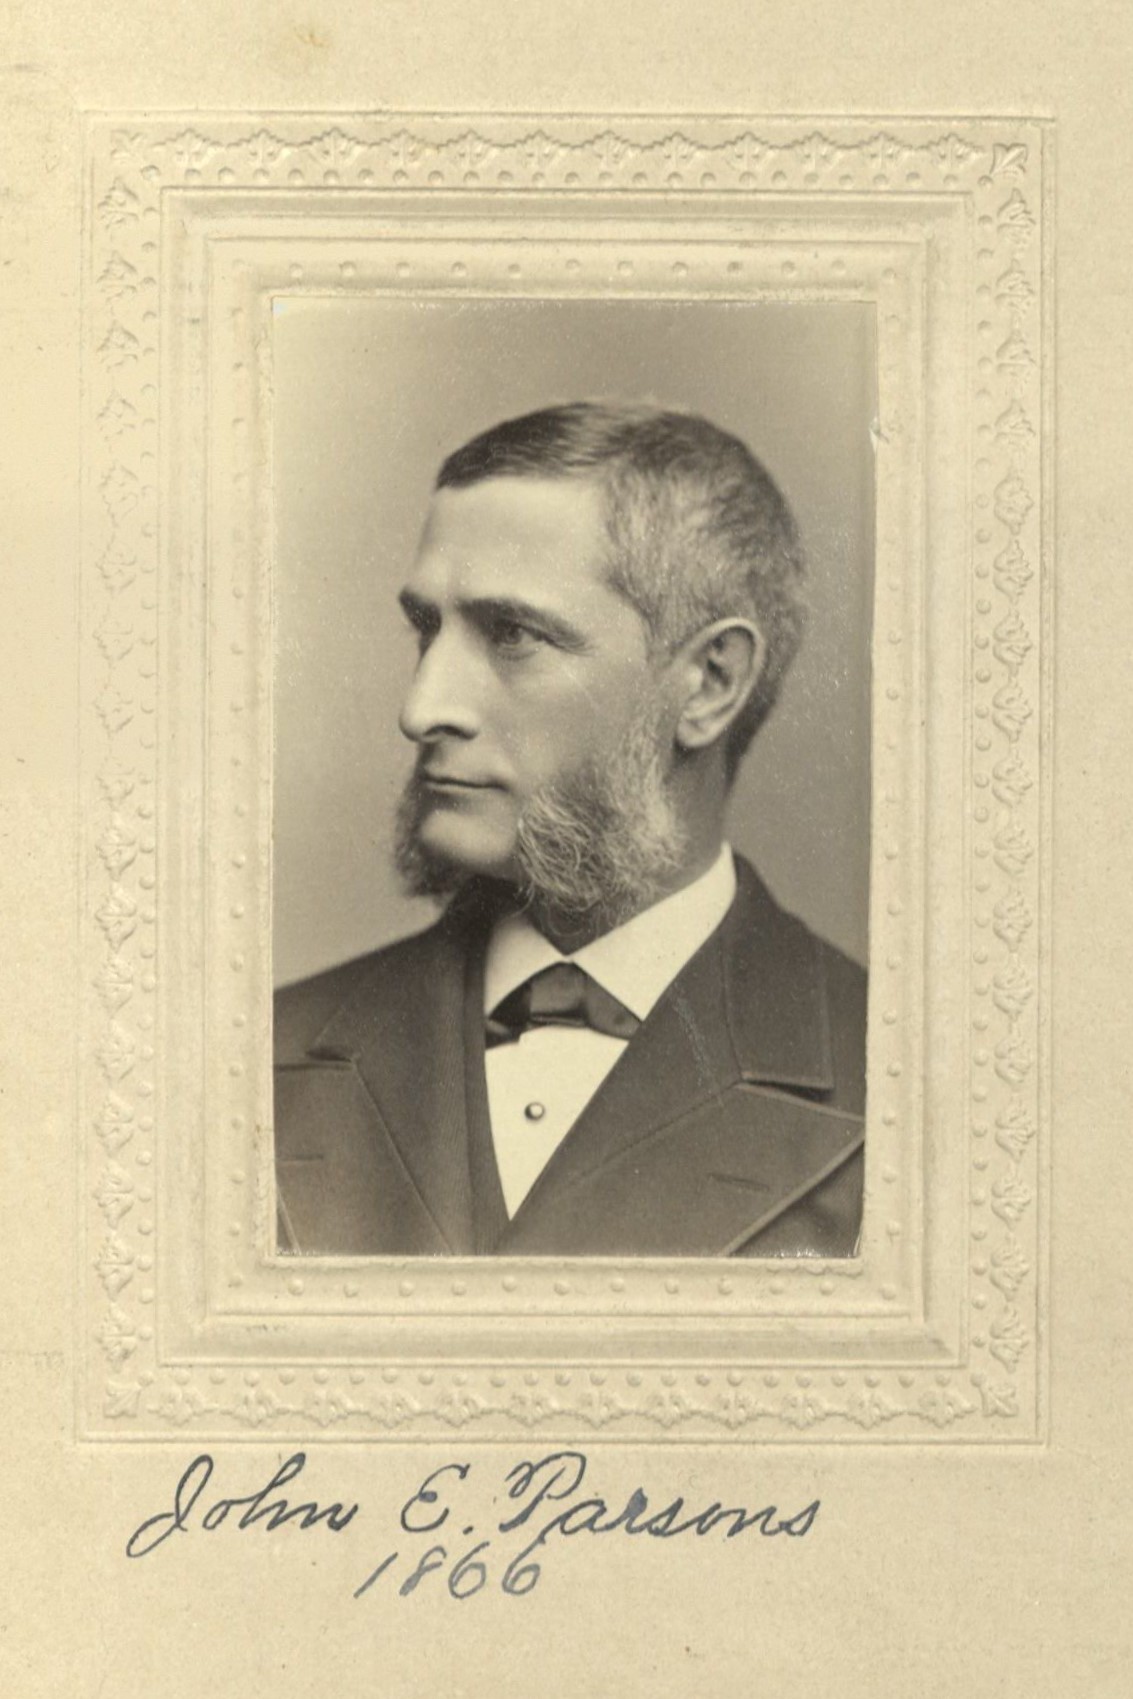 Member portrait of John E. Parsons